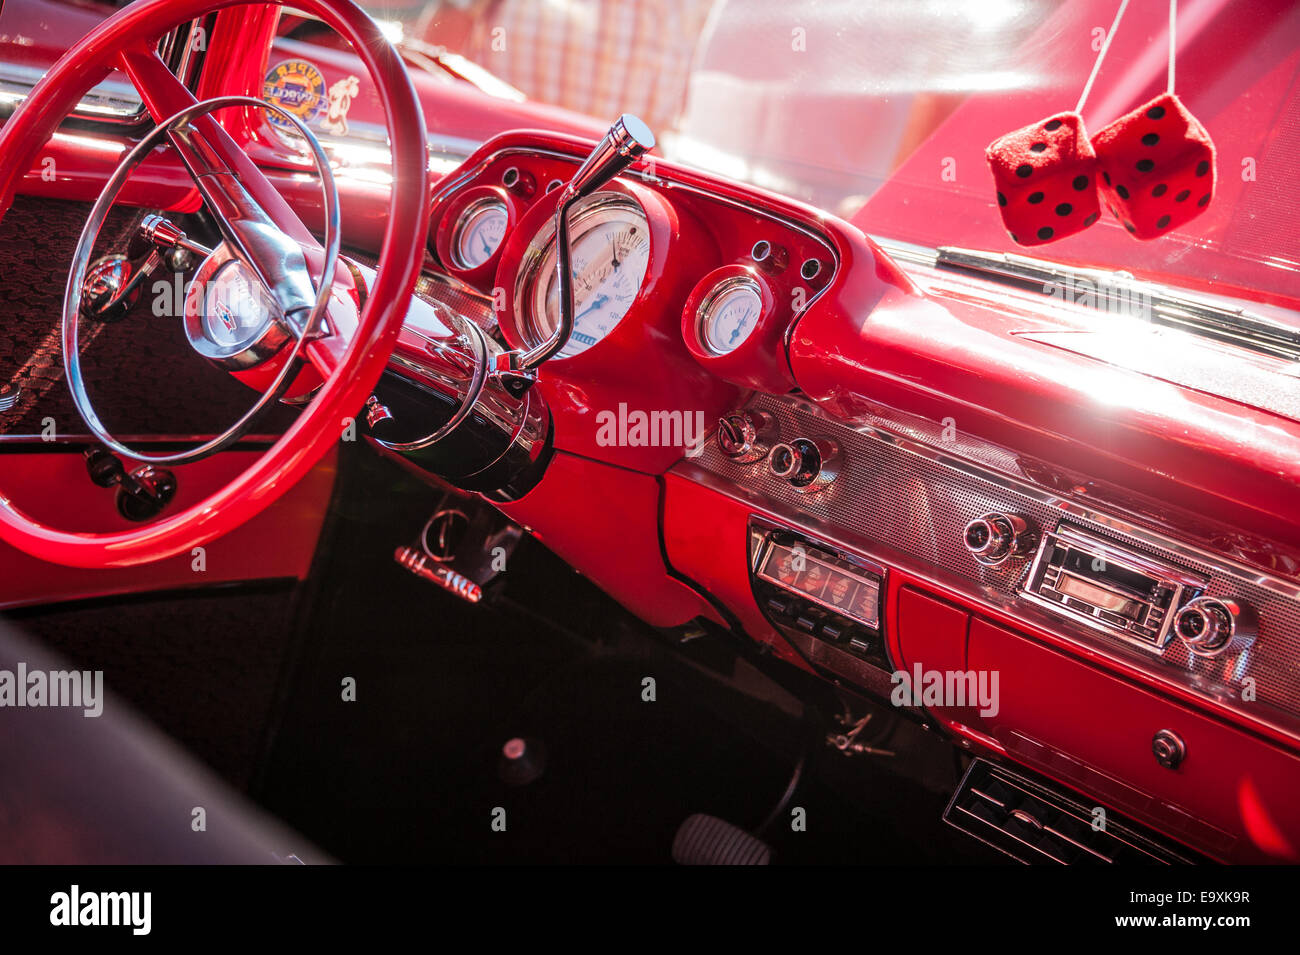 Rosso brillante, anni cinquanta classic Chevy Bel Air presso gli uomini di grazia Car Show in Snellville, Georgia, Stati Uniti d'America. Foto Stock